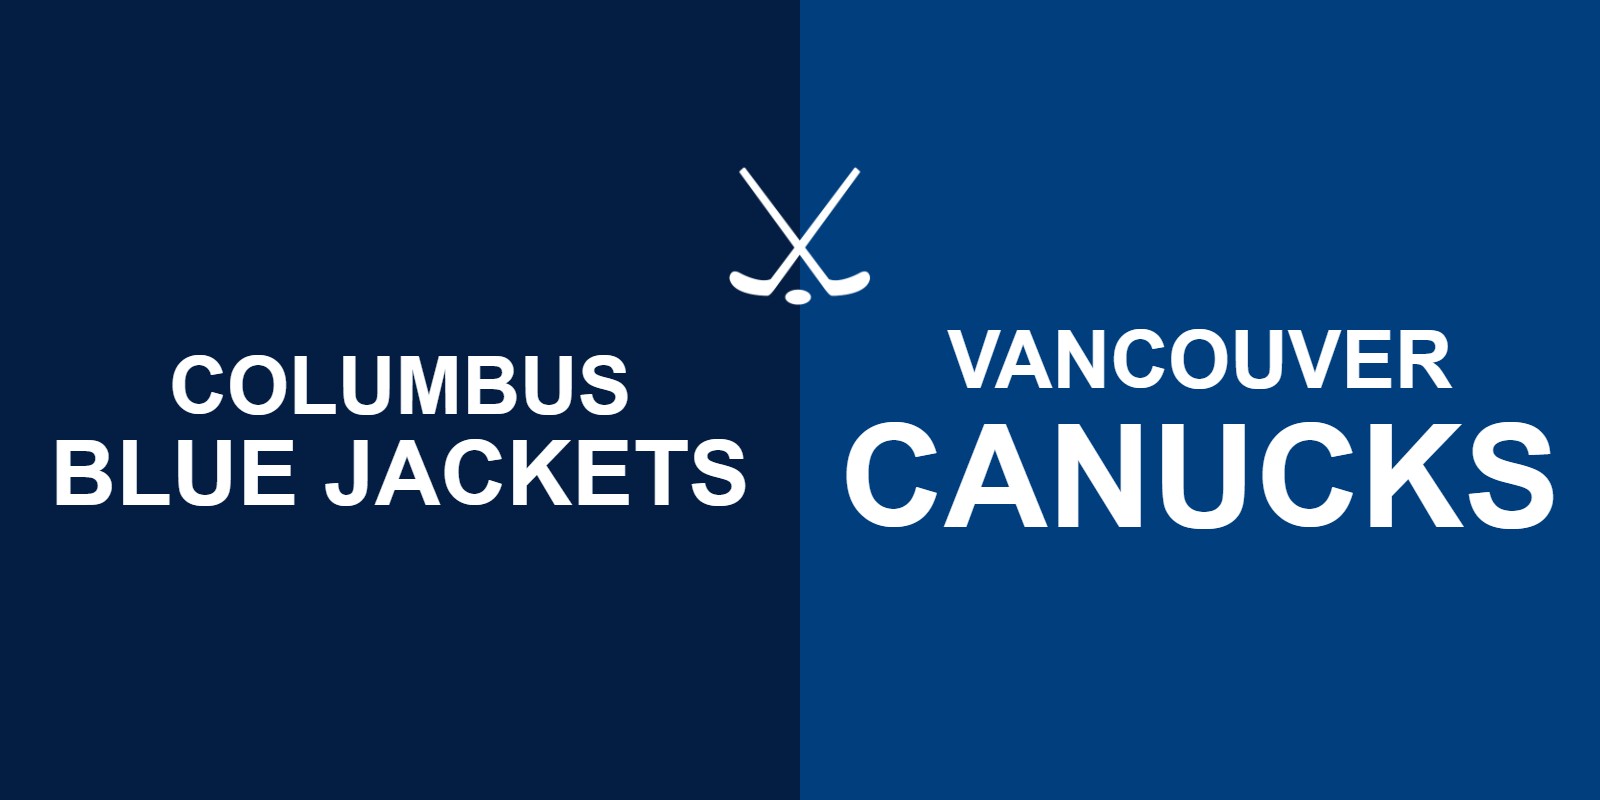 Blue Jackets vs Canucks